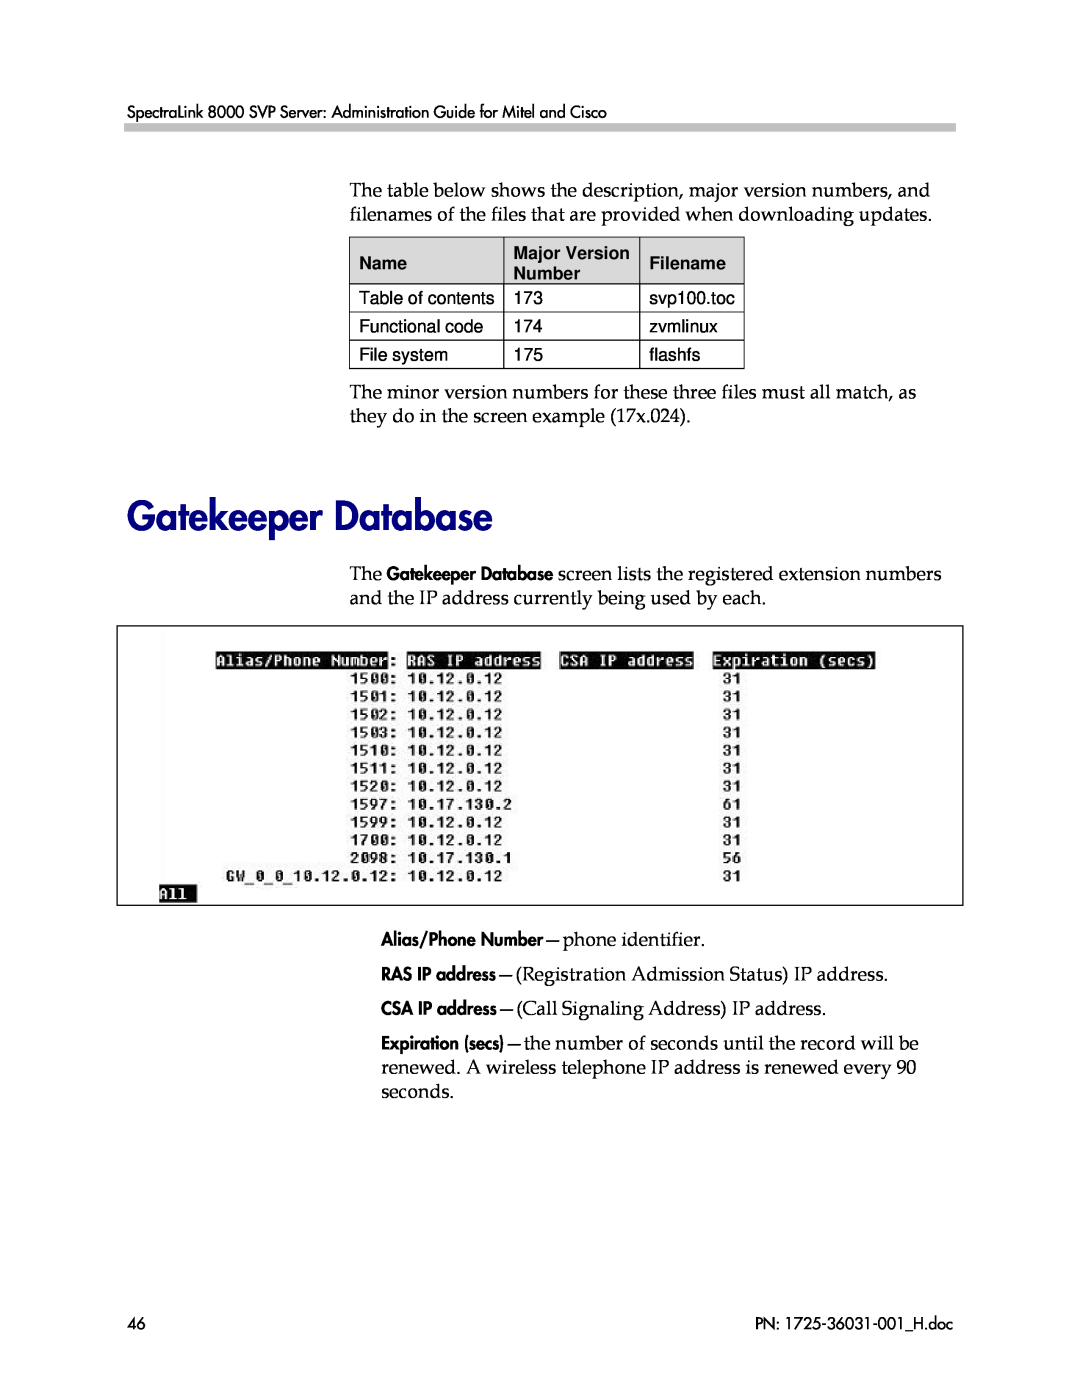 Polycom VP010, 1725-36031-001 manual Gatekeeper Database, Name, Major Version, Filename, Number 